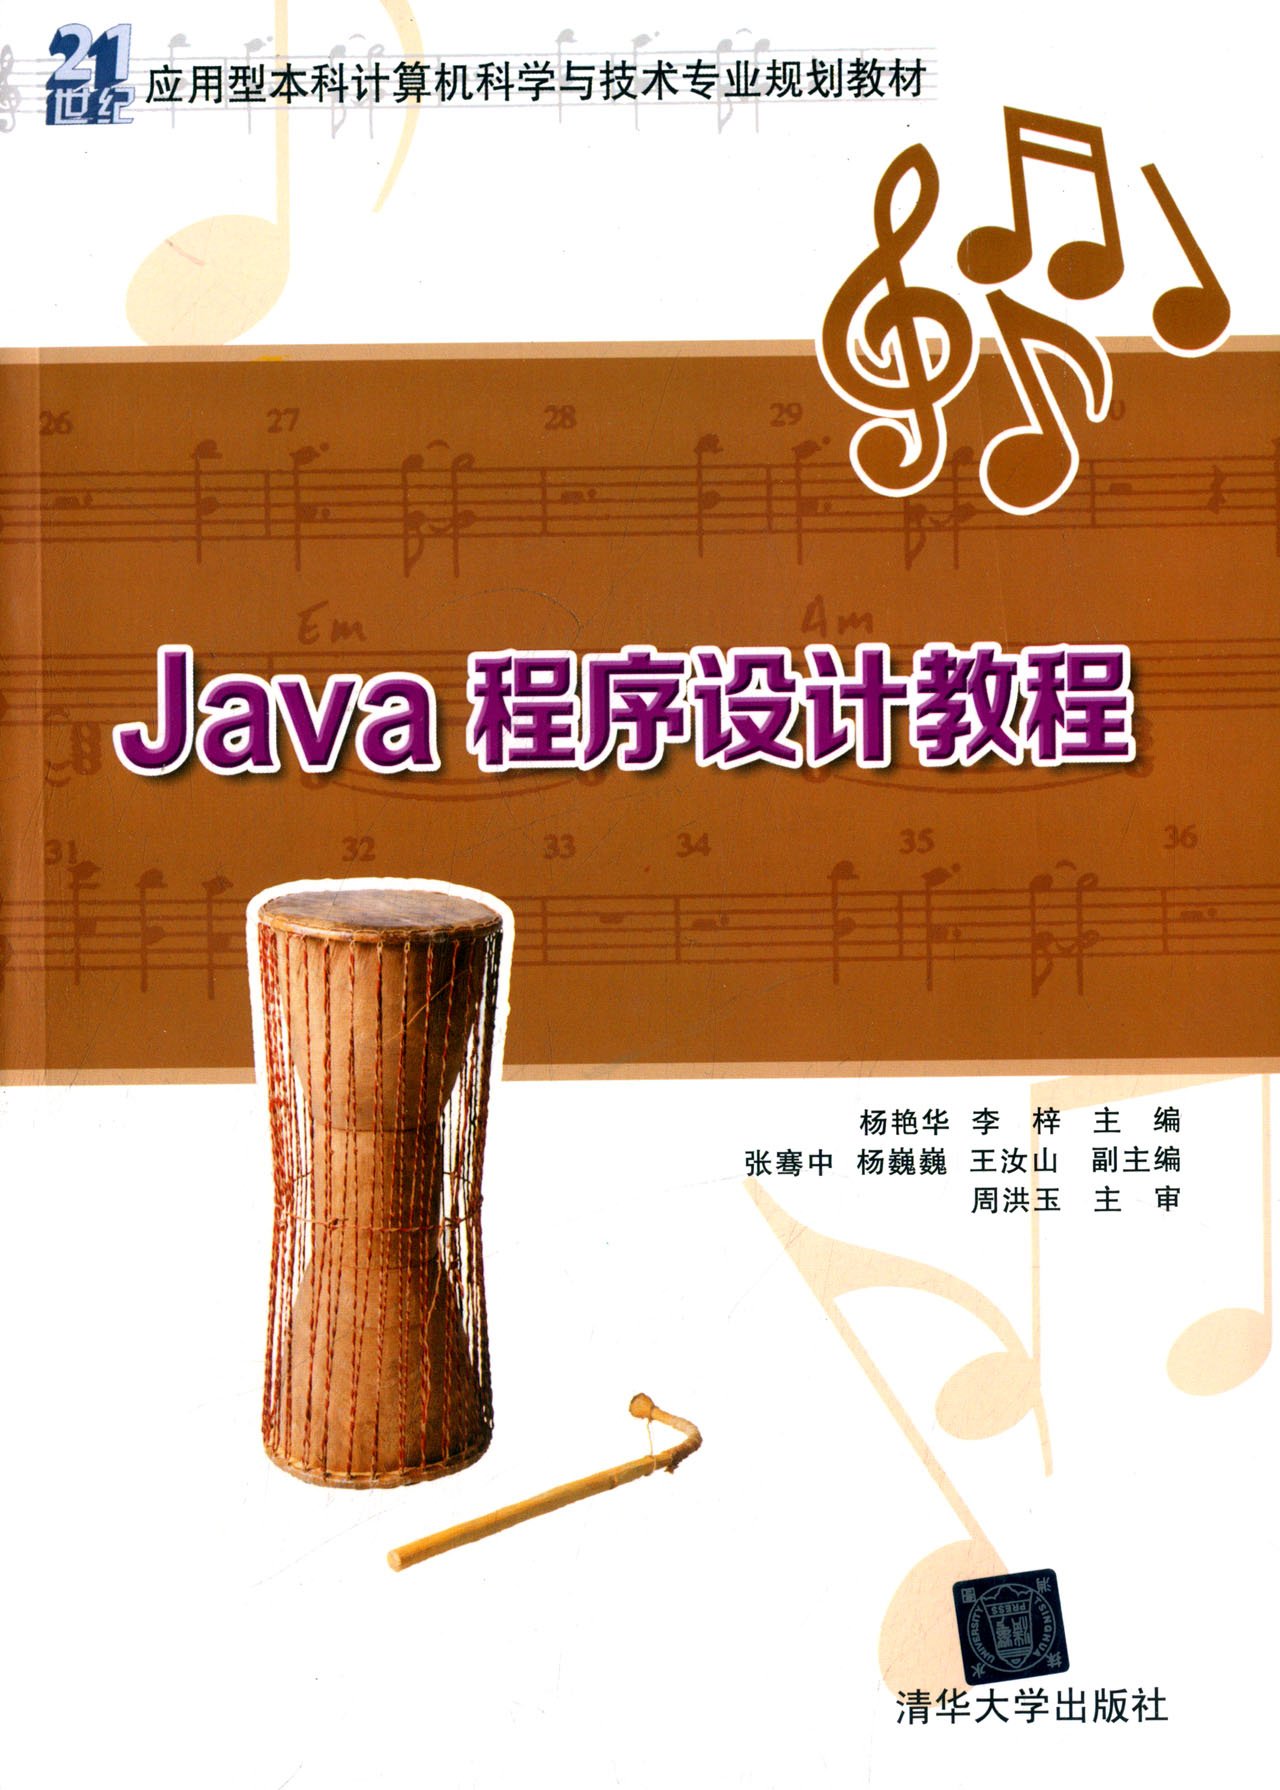 Java程式設計教程(楊艷華、李梓主編書籍)